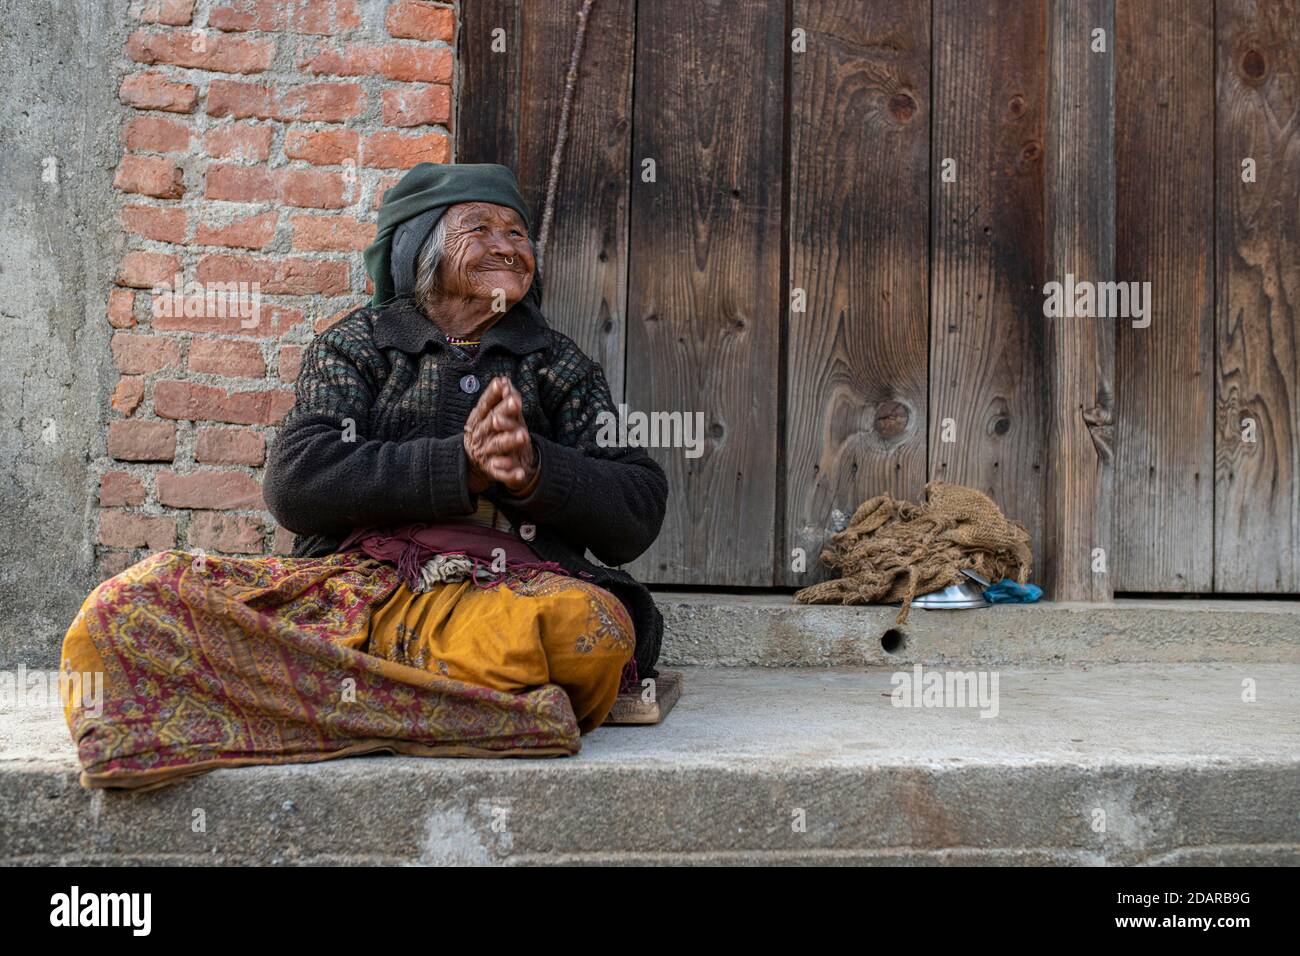 Freundliche lächelnde ältere Frau mit Kopftuch und Nasenring sitzt vor einer Holztür, Himalaya, Jiri, Khumbu Region, Nepal Stockfoto